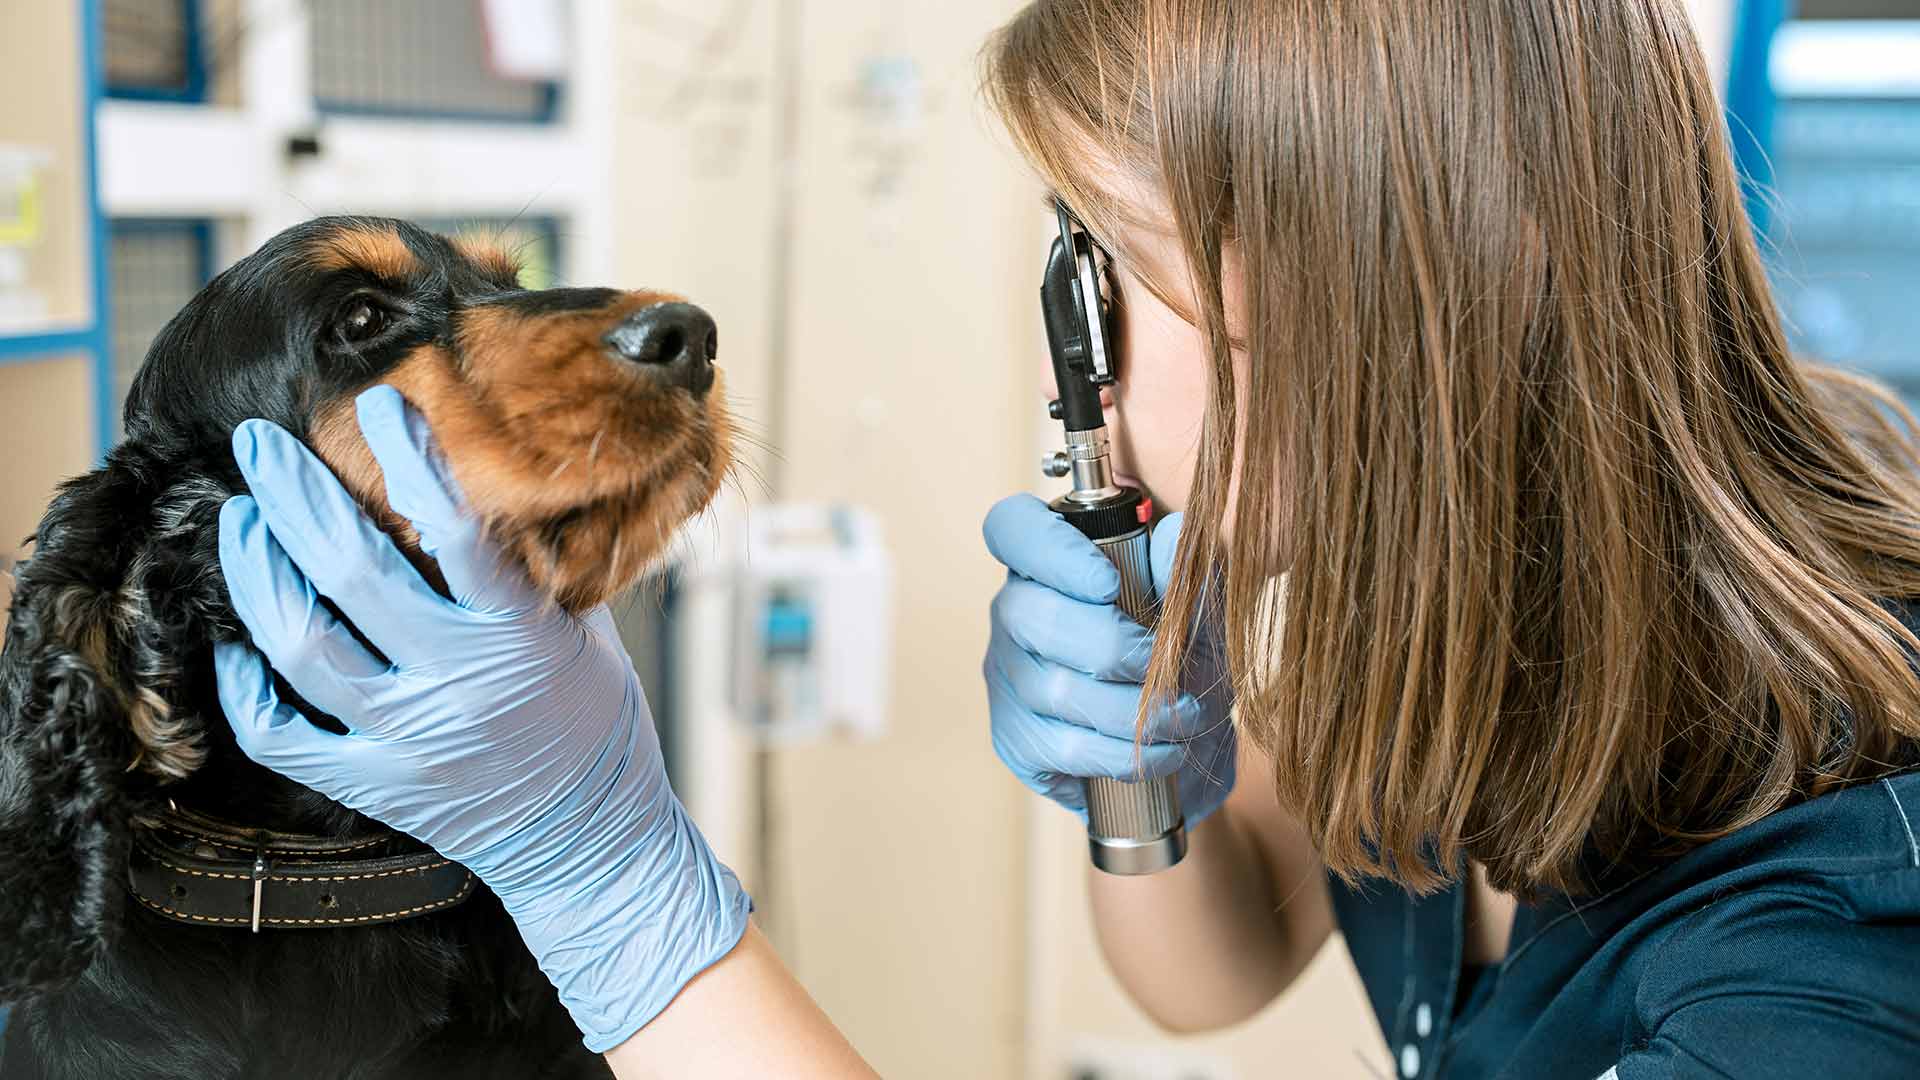 Seguros para mascotas con atención veterinaria y protección civil